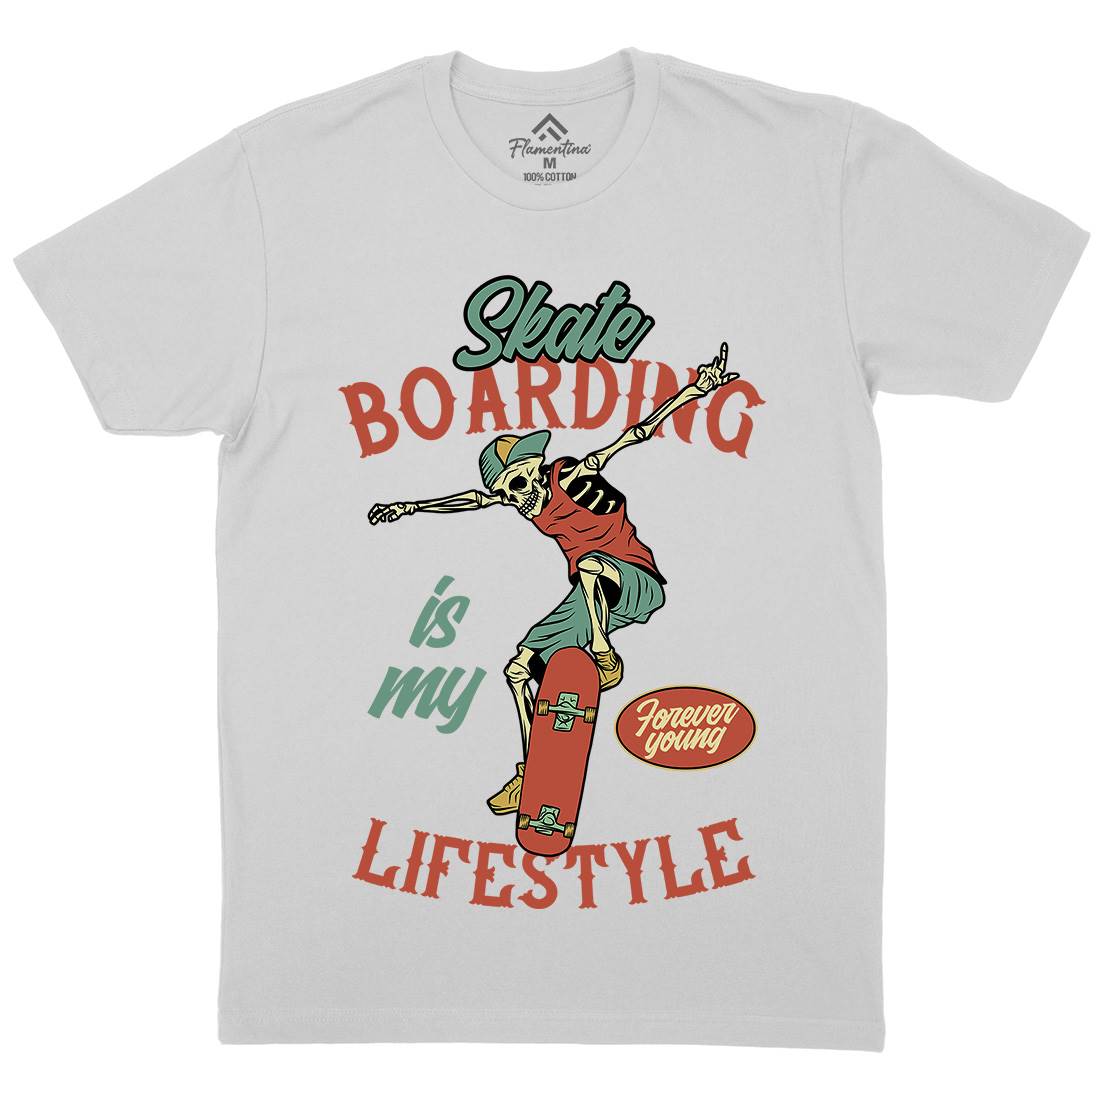 Skateboarding Lifestyle Mens Crew Neck T-Shirt Skate D976